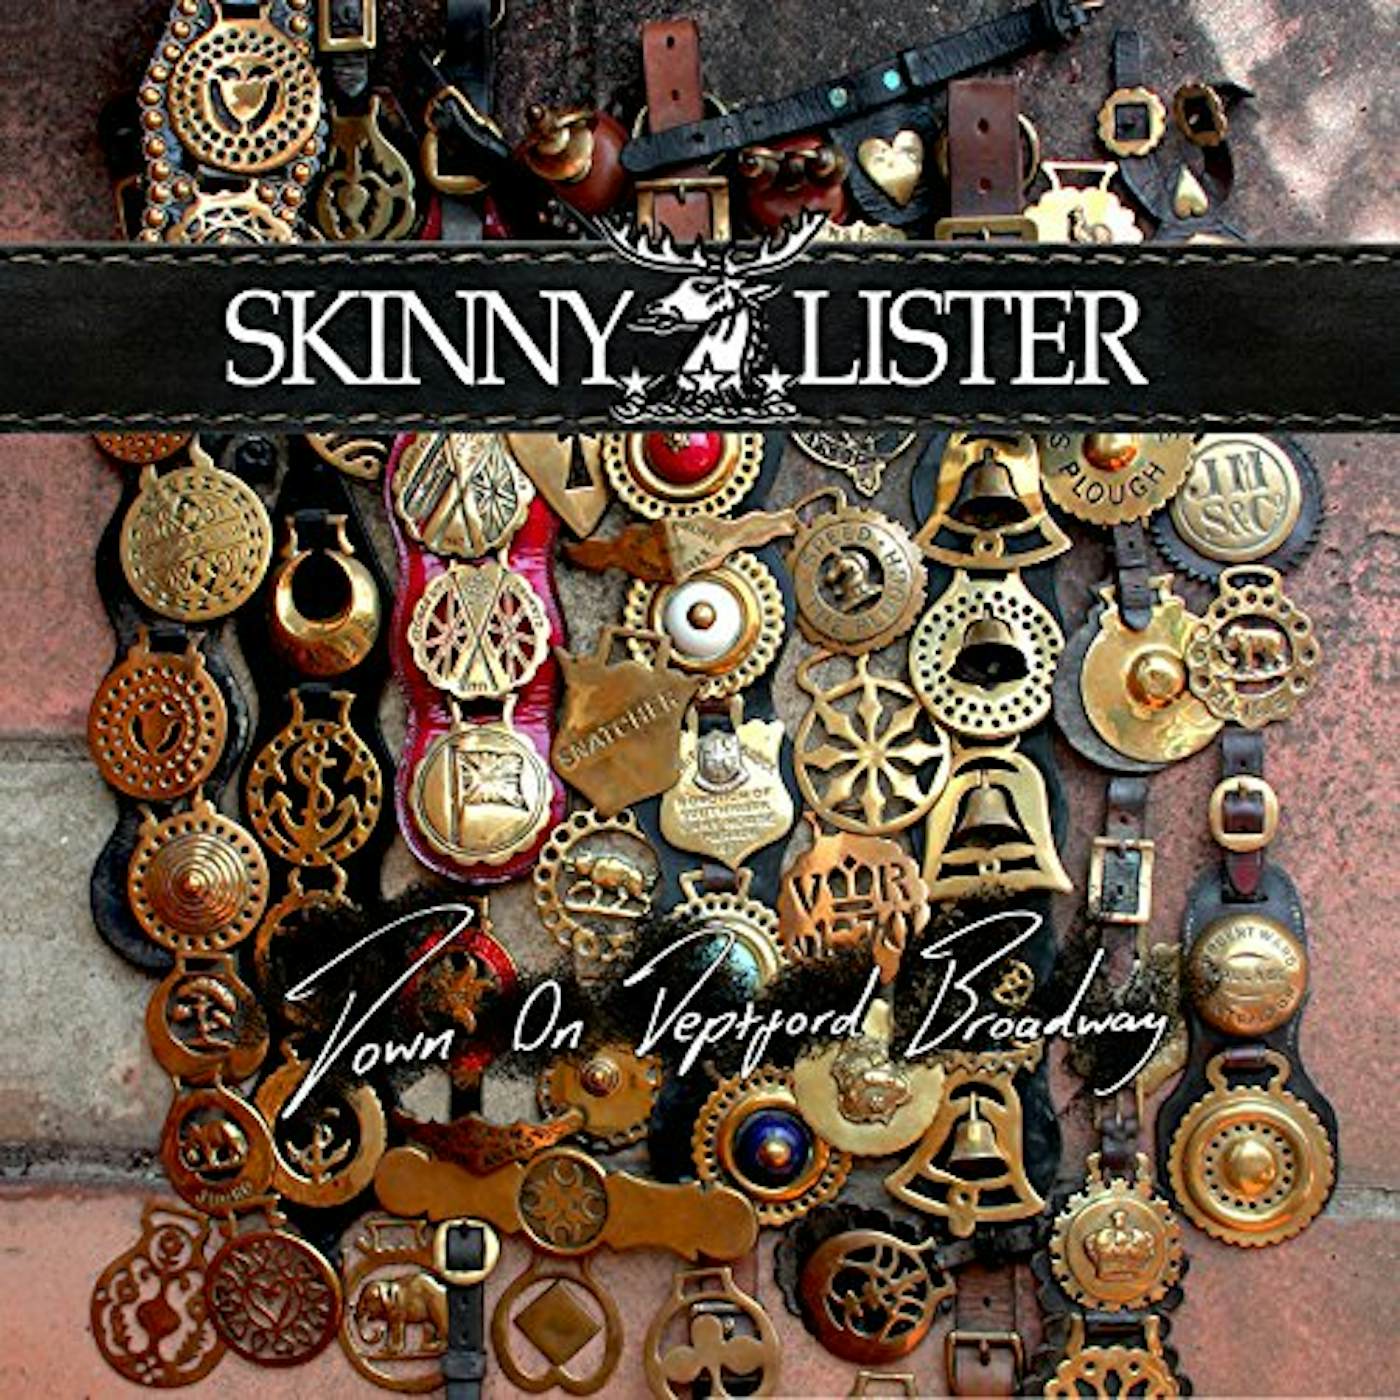 Skinny Lister DOWN ON DEPTFORD BROADWAY CD